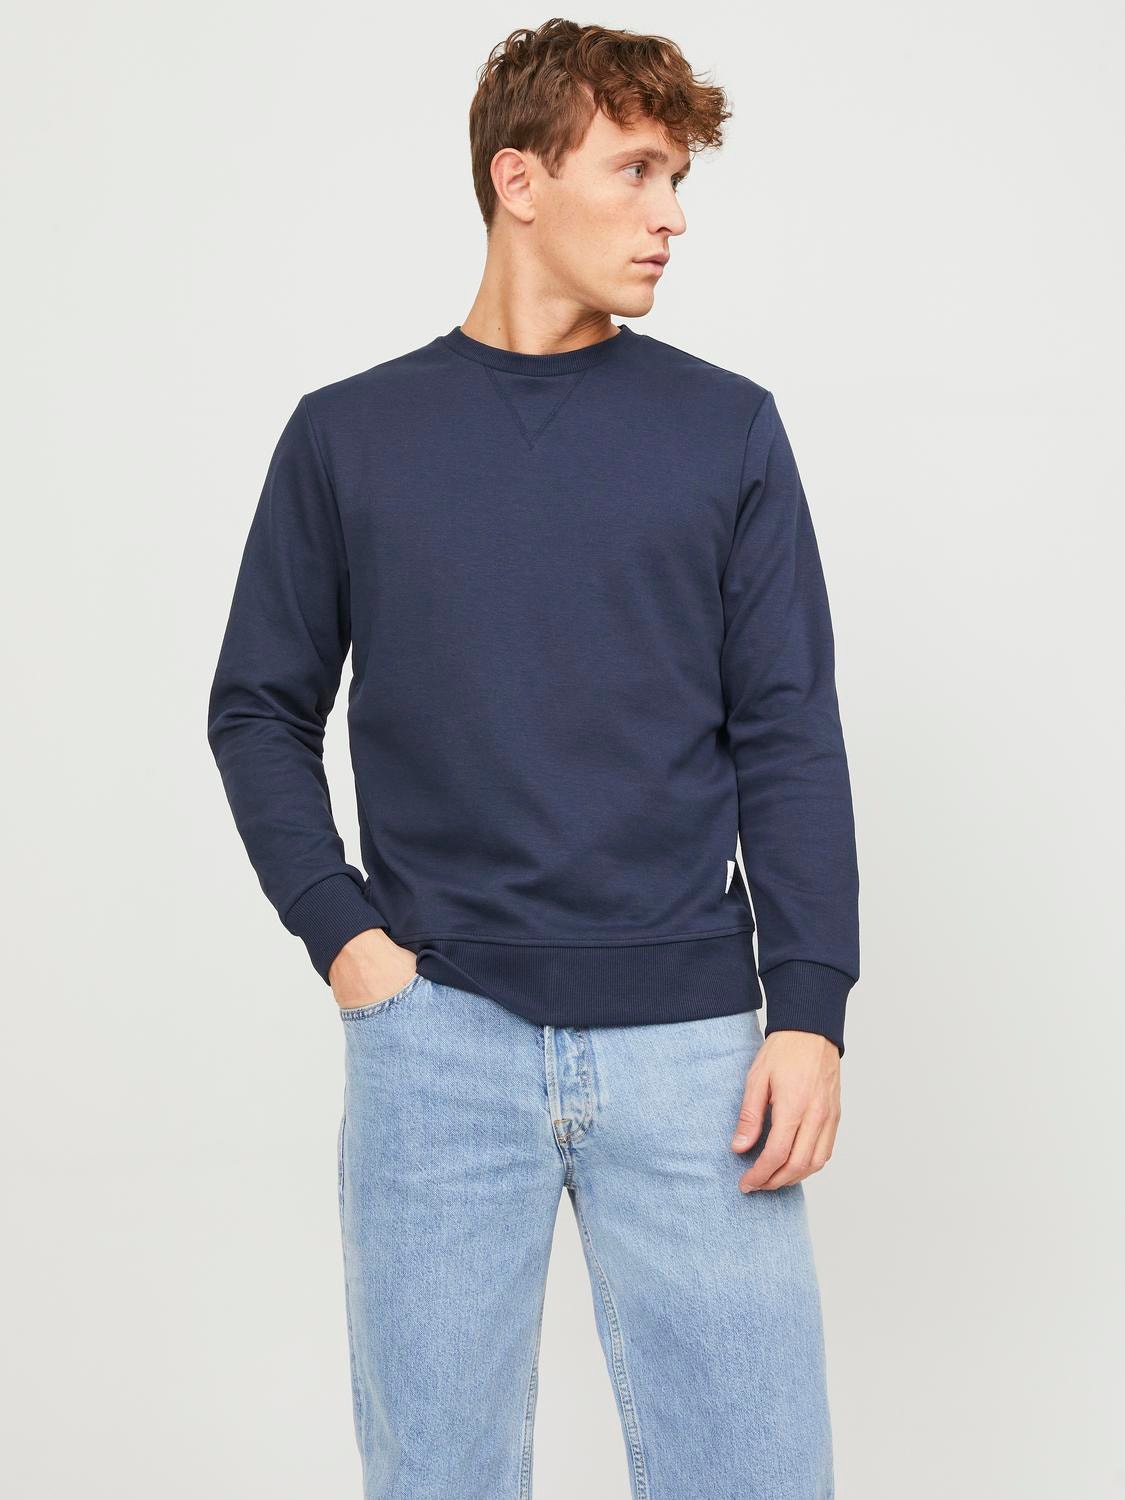 Jack & Jones Plain Crew neck Sweatshirt -Navy Blazer - 12181903